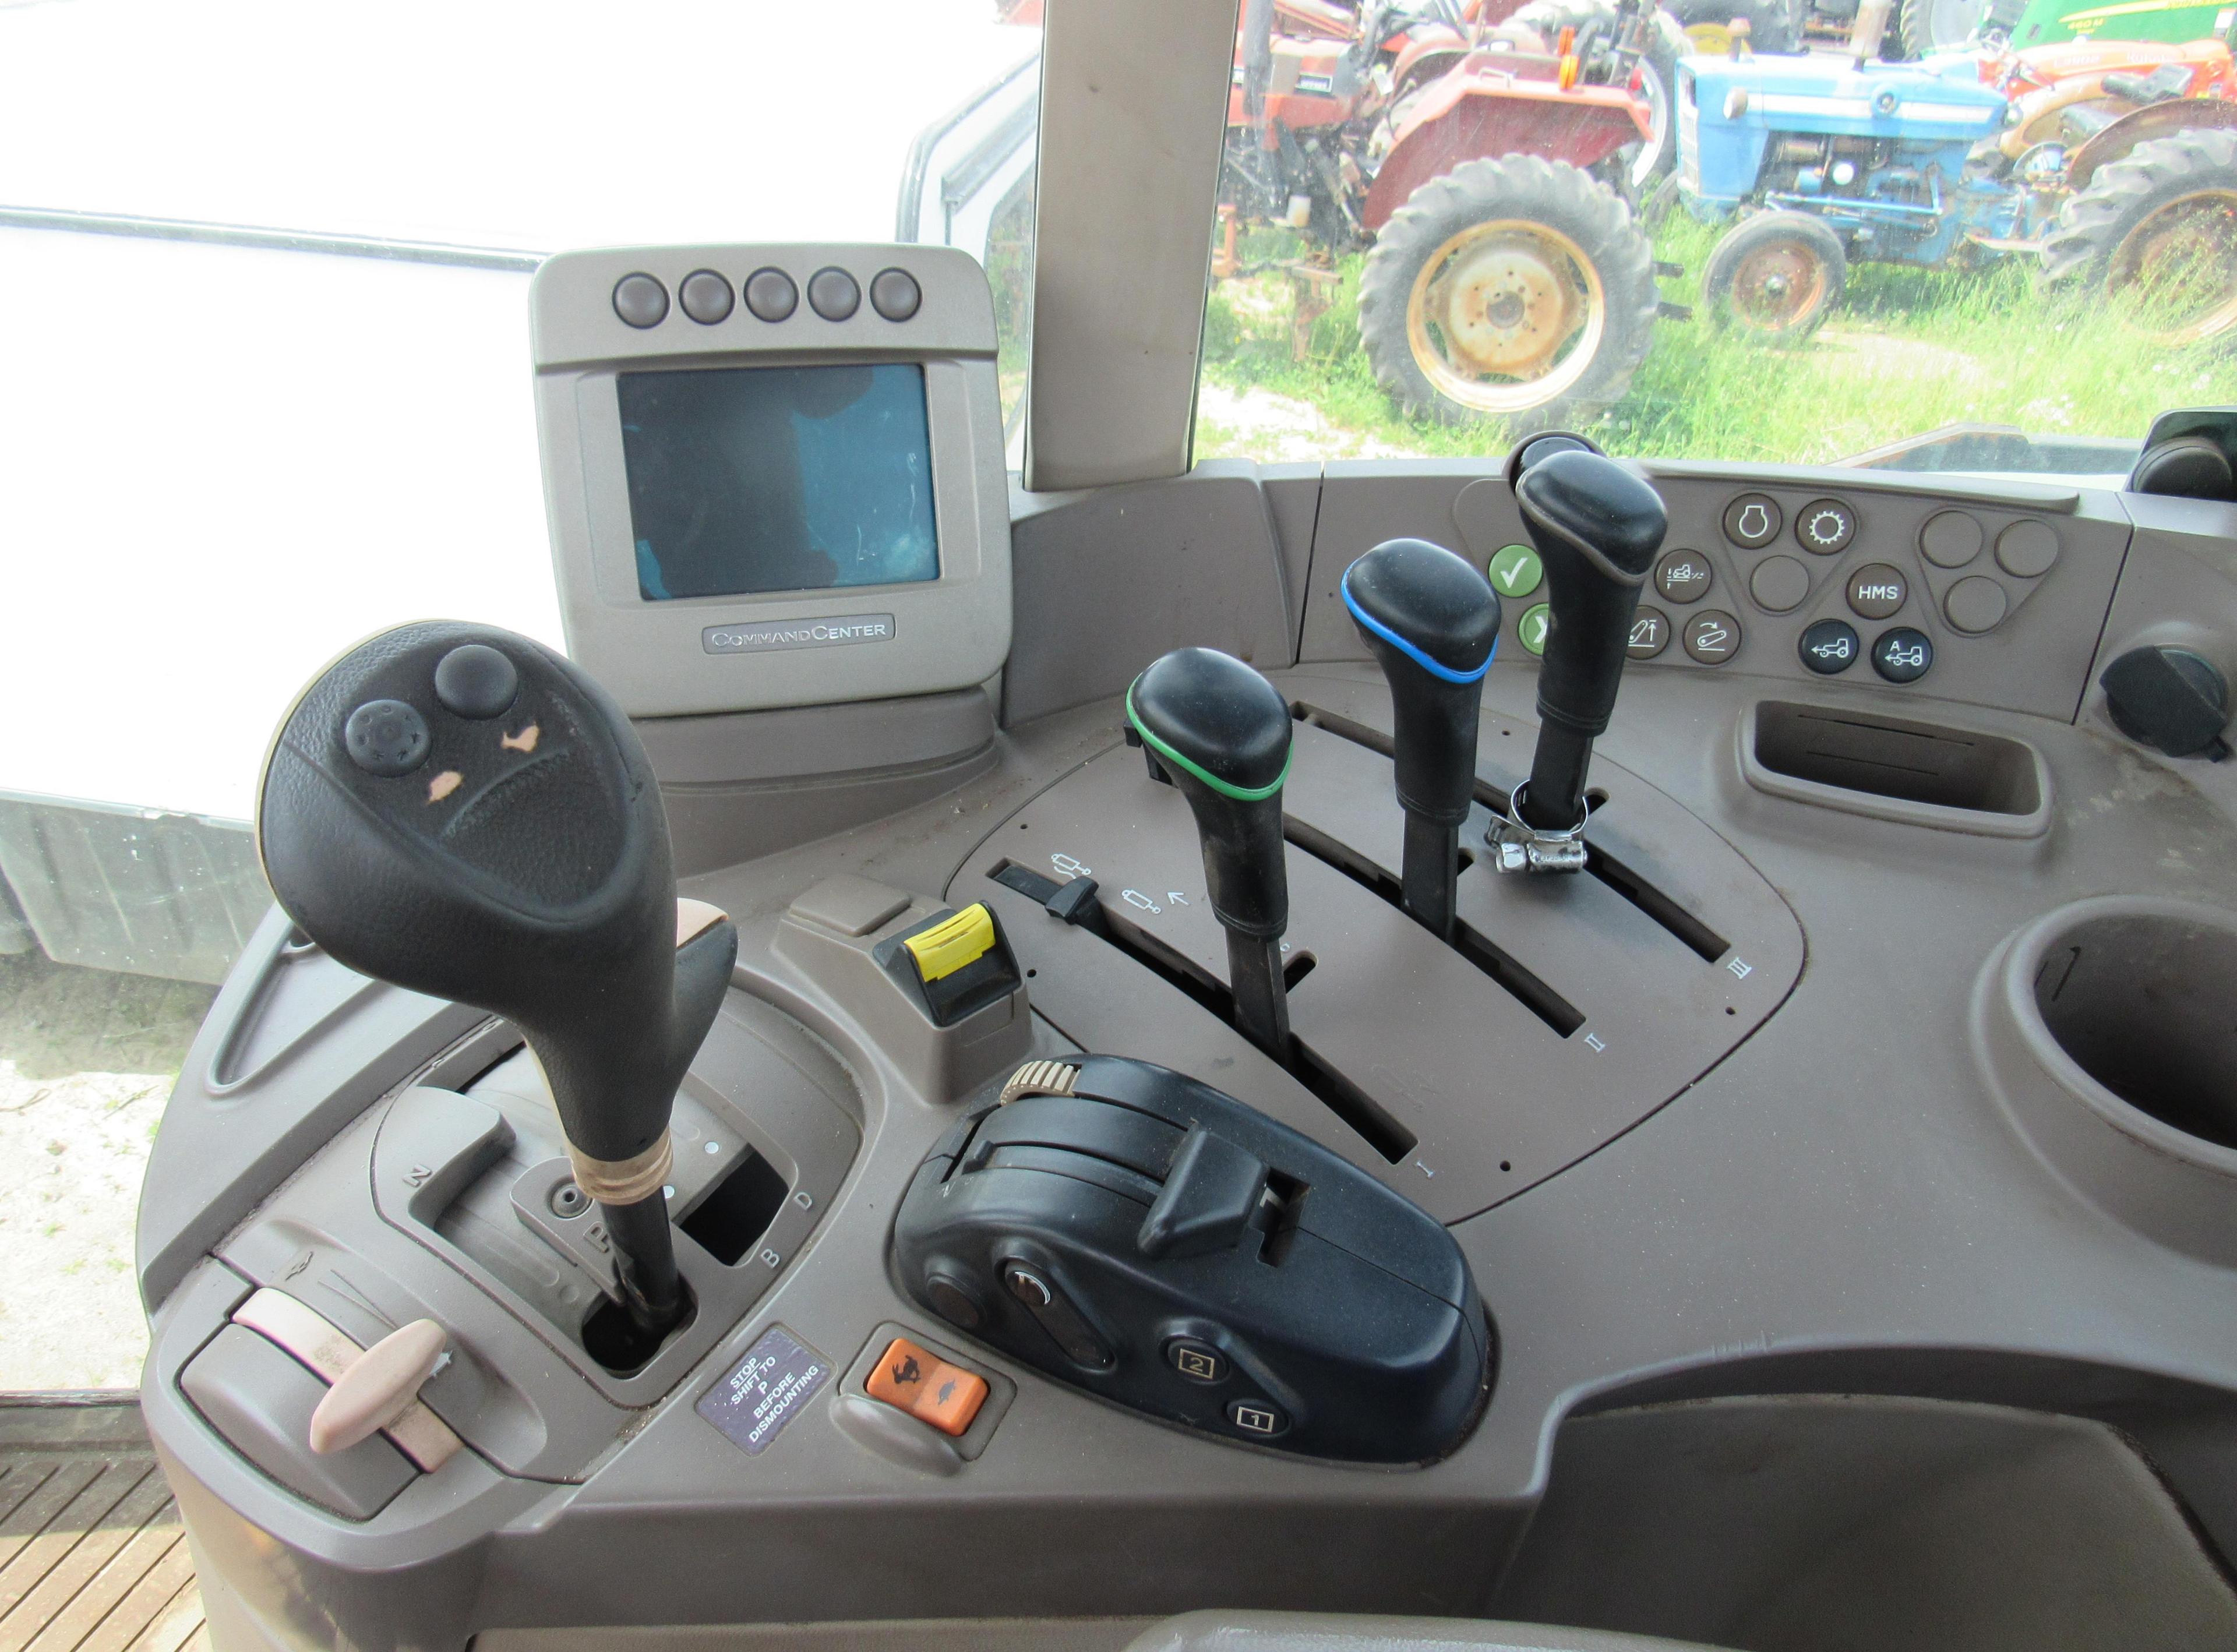 JD 7230 Premium Cab Tractor